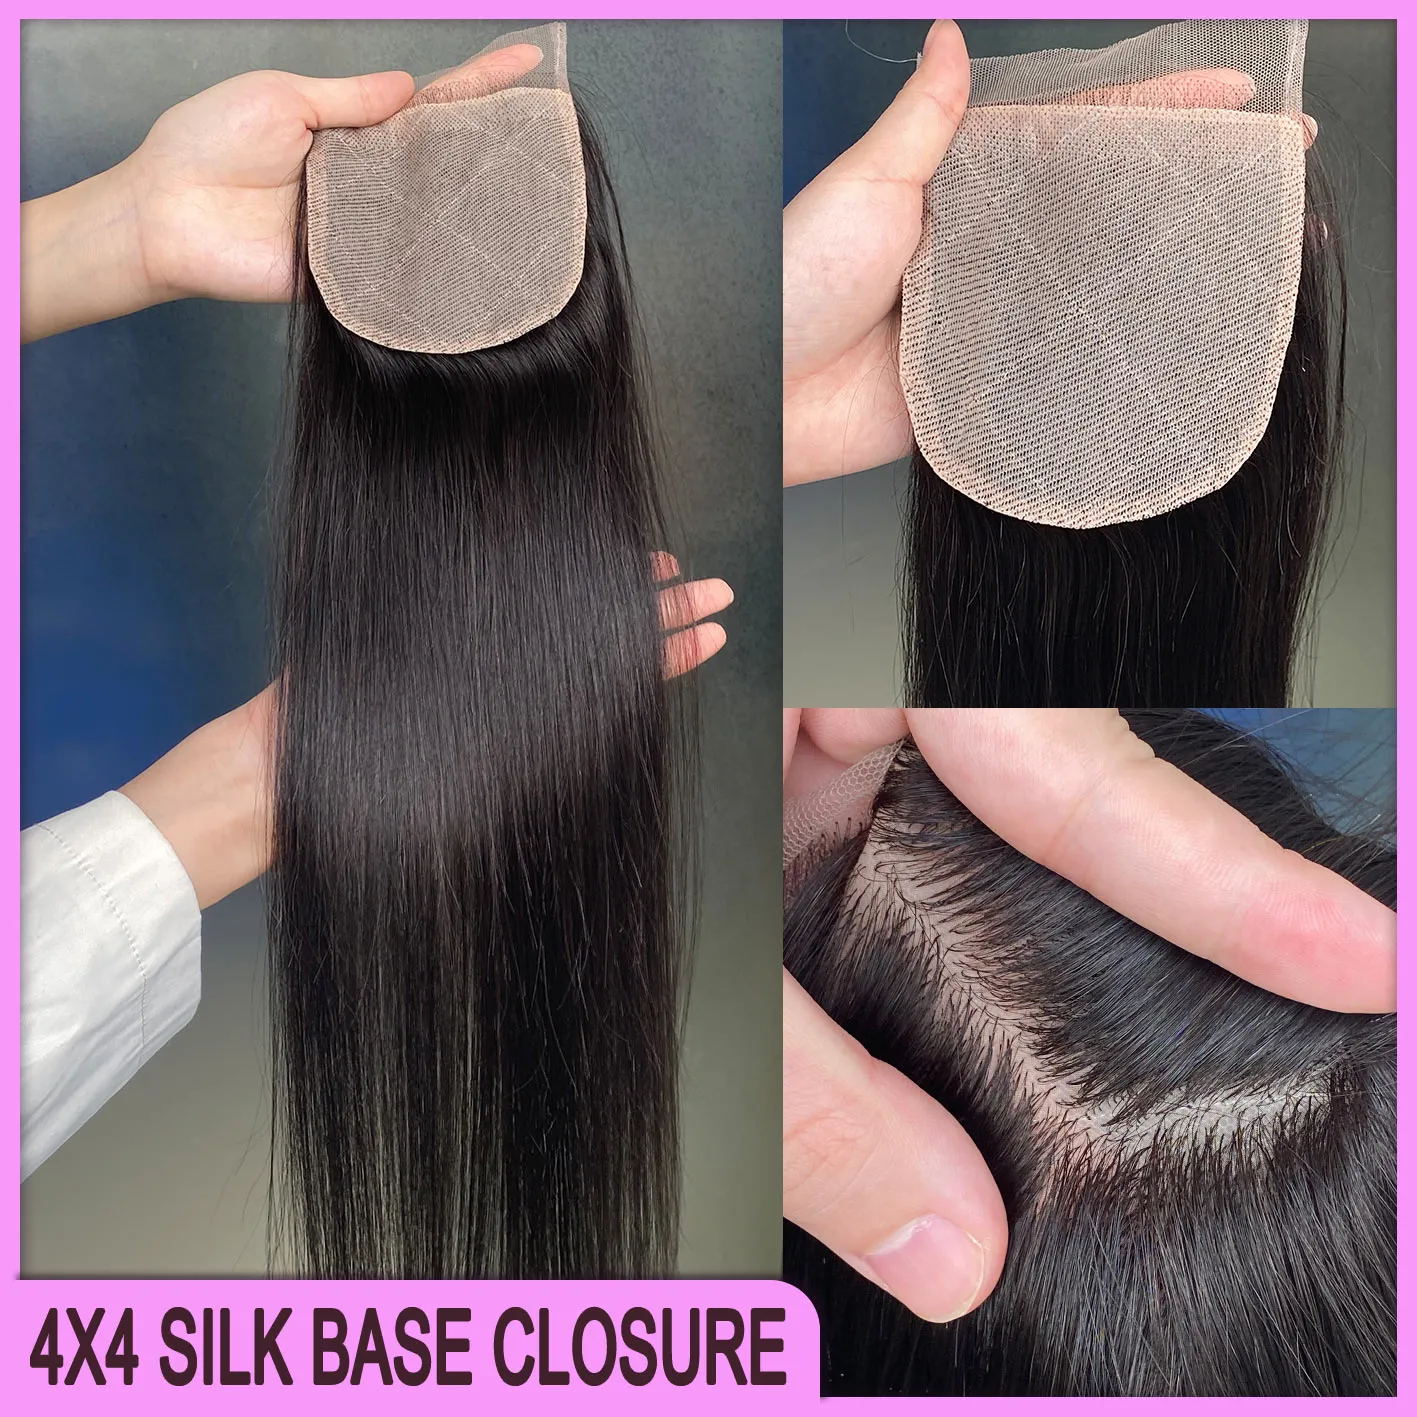 Glamorous 100% cheveux humains vierges crus 4x4 fermeture de base en soie 1 pièce couleur naturelle Extension de cheveux raides soyeux